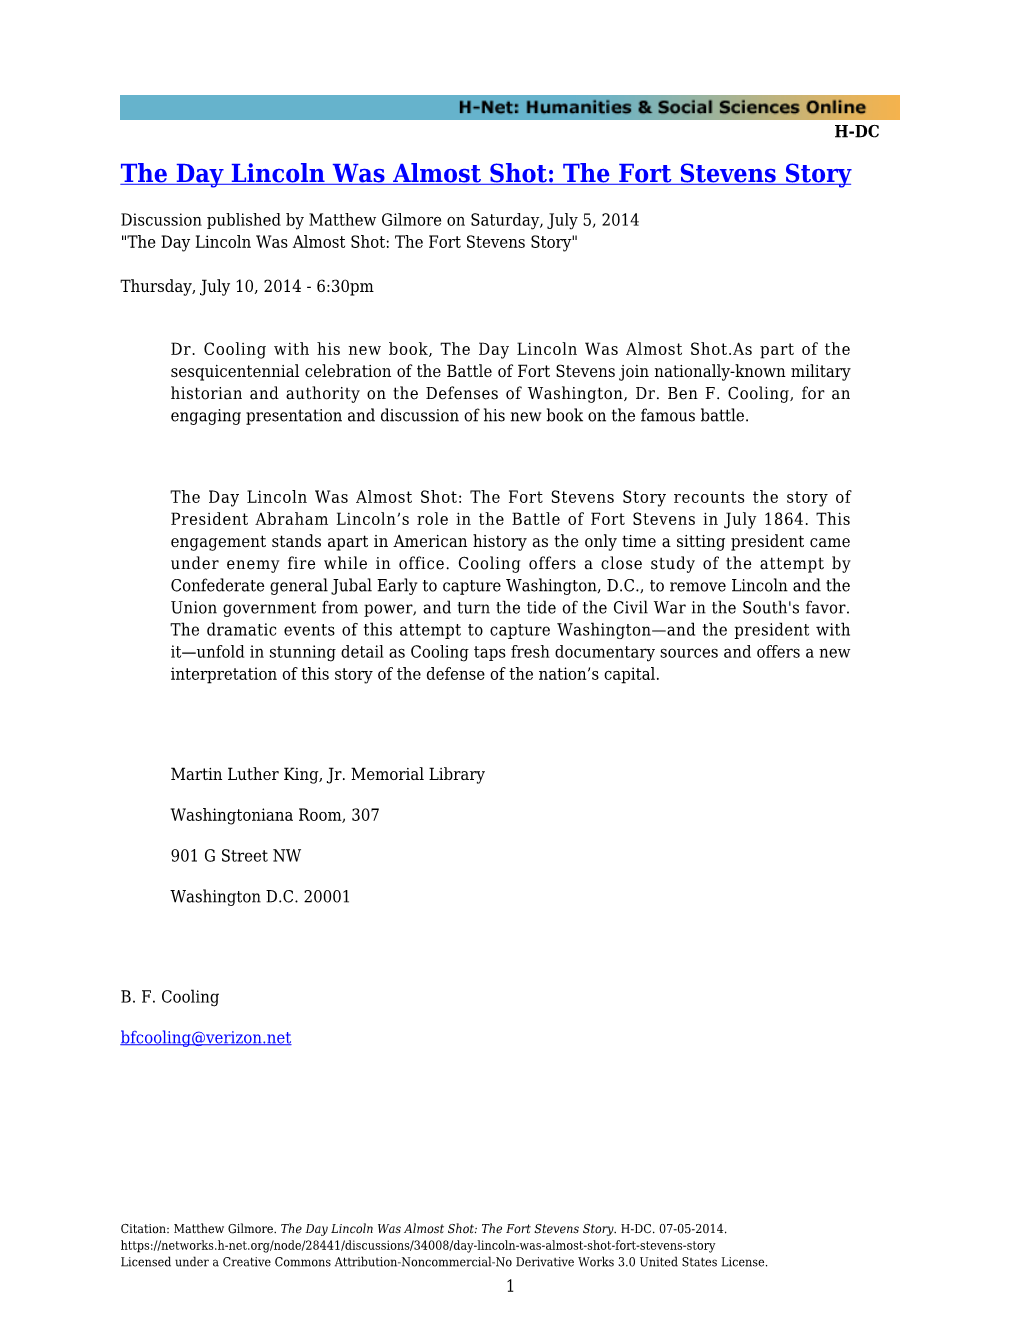 The Fort Stevens Story